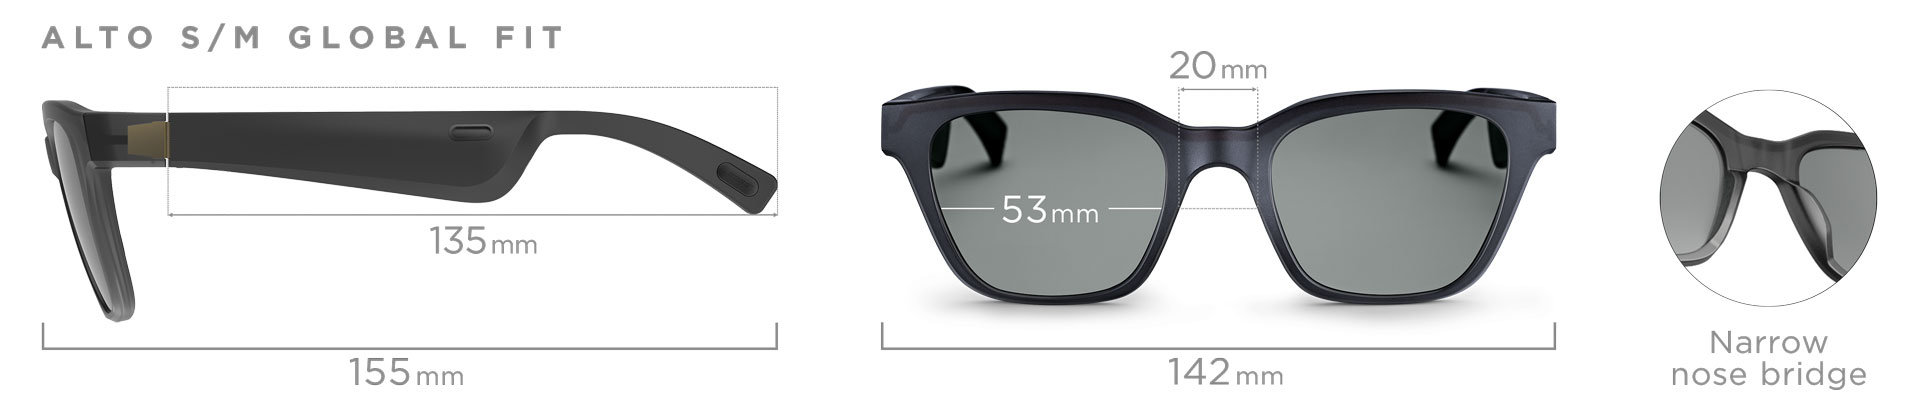 Bose Frames Alto Audio Sunglasses | Techies | Shop The Exchange